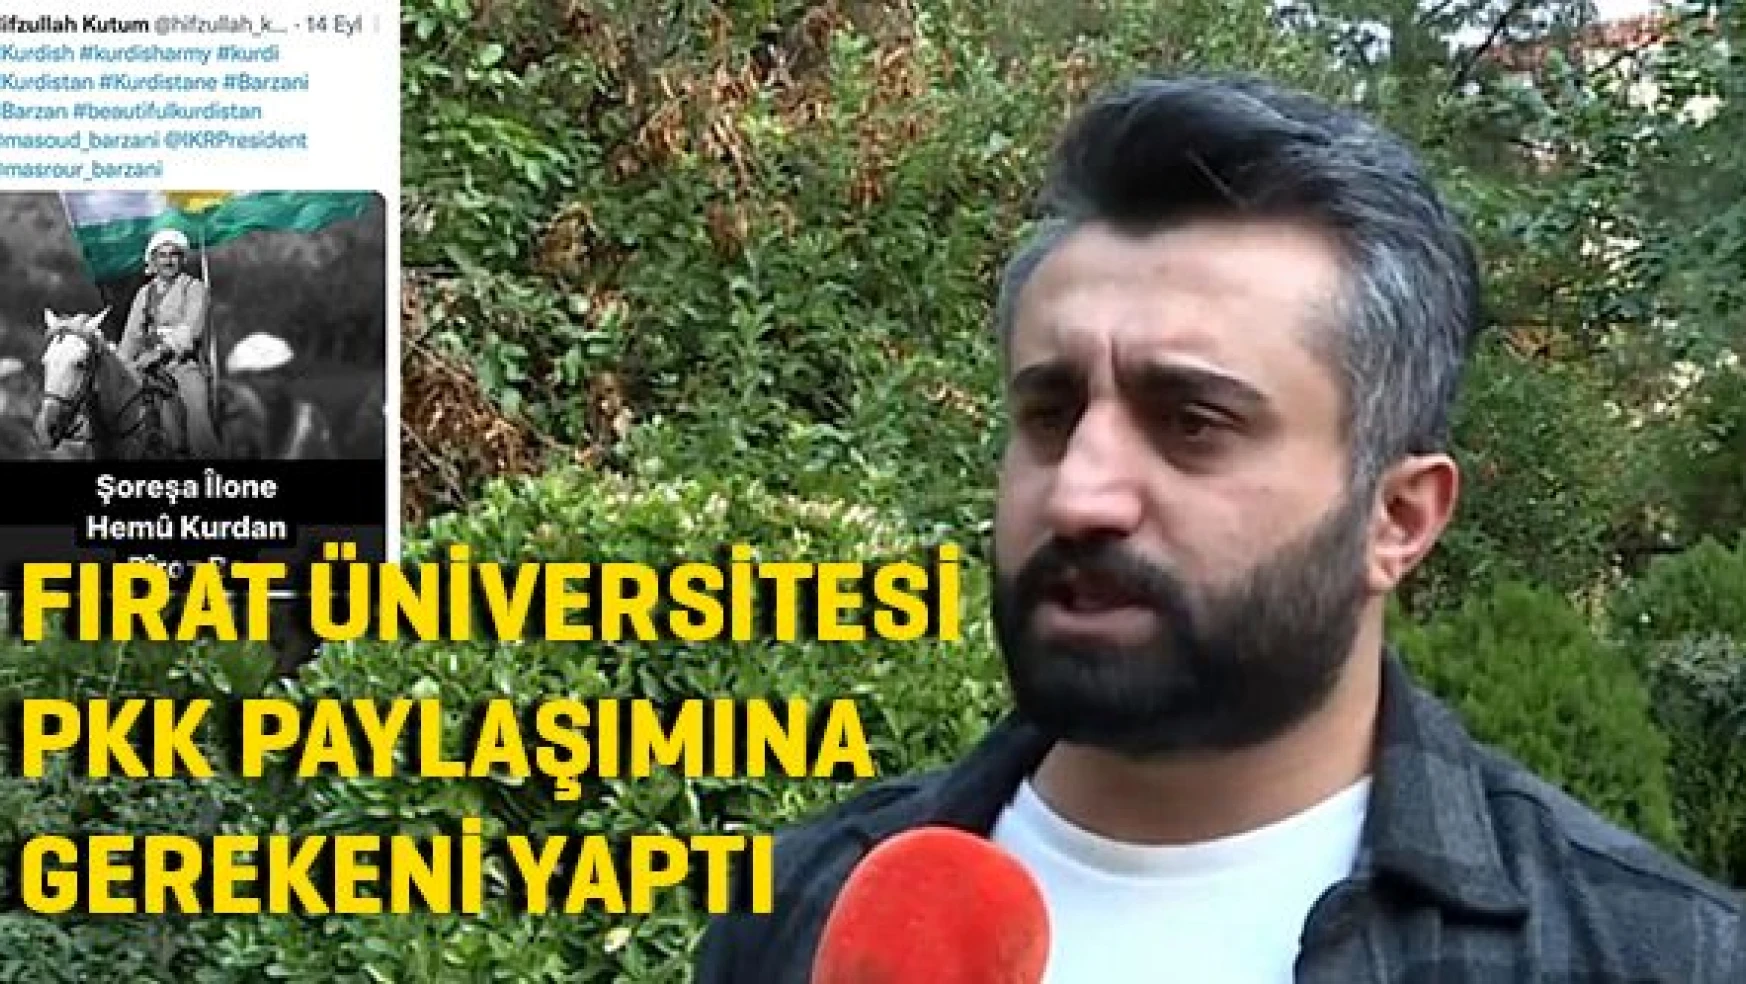 Üniversite yönetimi PKK paylaşımına gerekeni yaptı